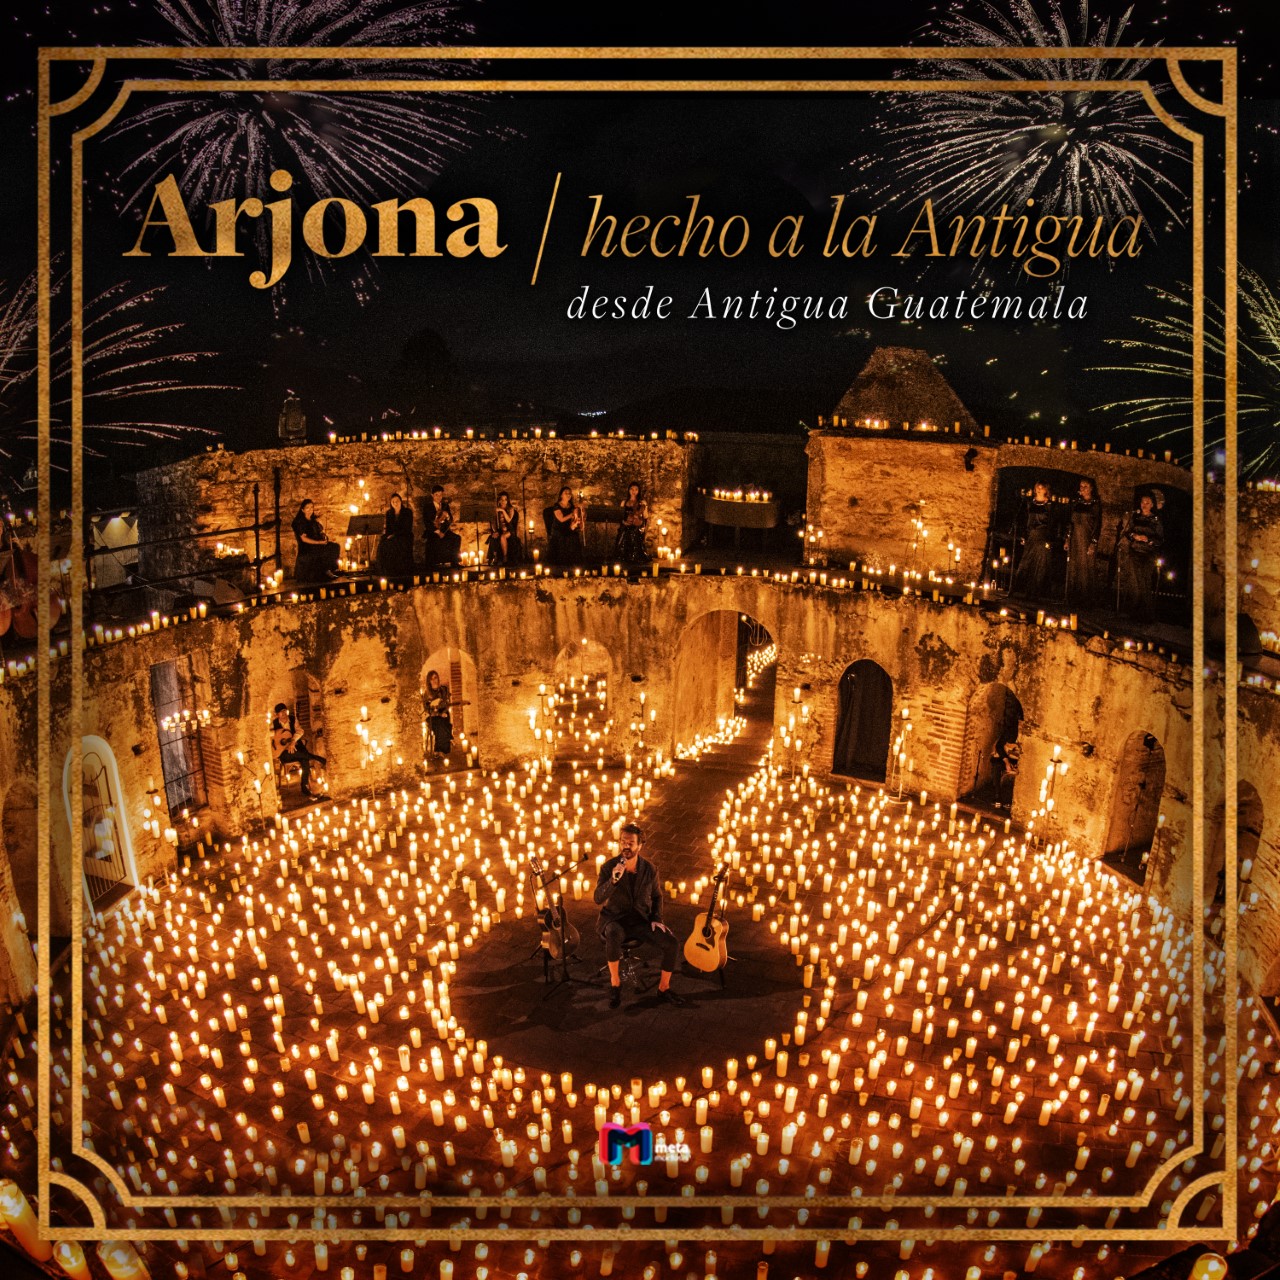 El concierto livestreaming “Hecho a la Antigua” de Ricardo Arjona ya está a la venta como álbum